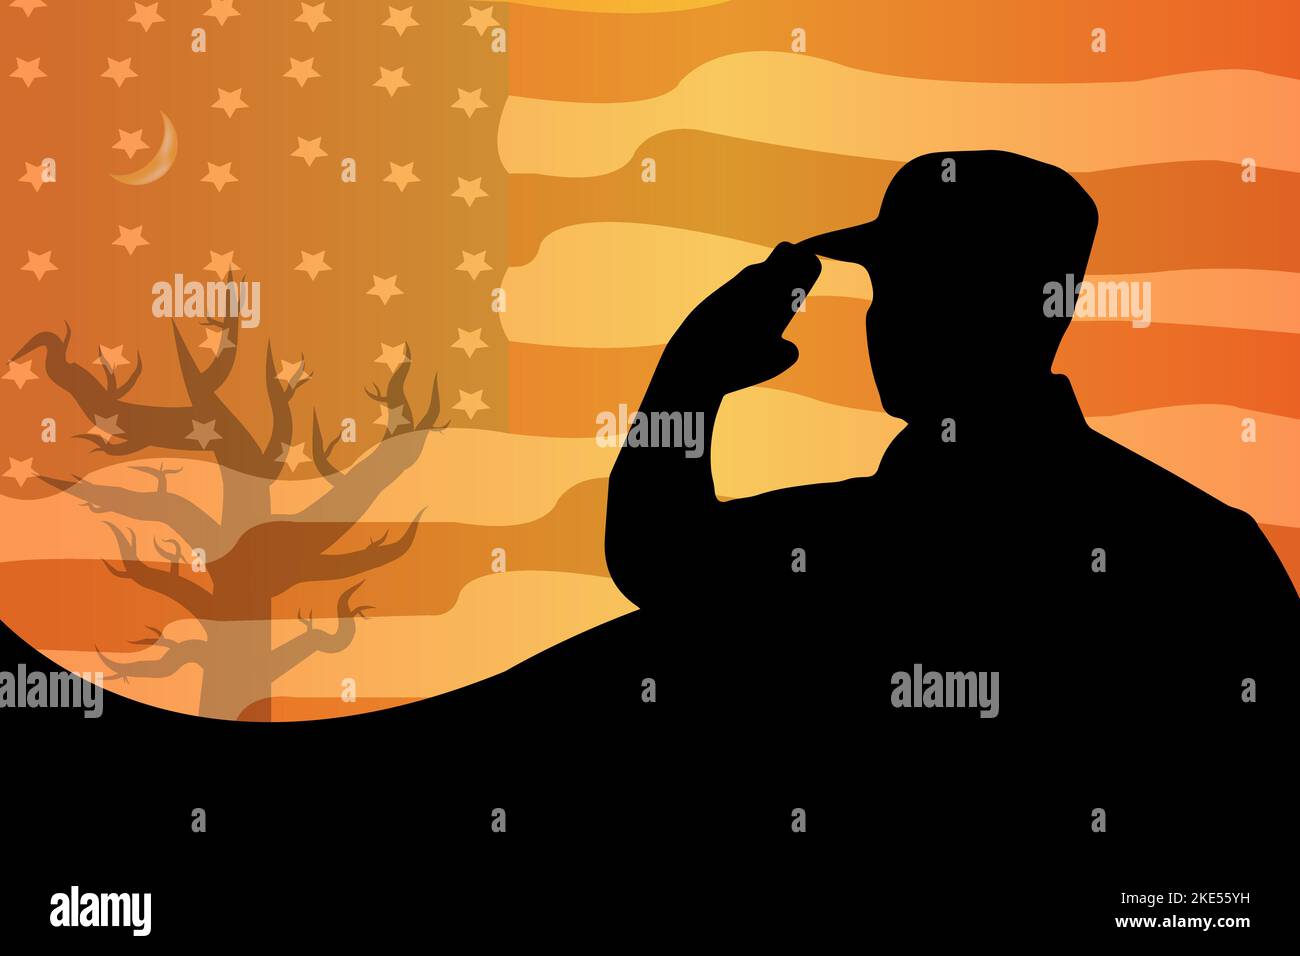 Bandera americana y silueta del soldado en la hora del amanecer del atardecer. Adecuado para el Día de los Veteranos, Día de la Independencia, Día de los Caídos, 4th de julio o Día del Trabajo Ilustración del Vector